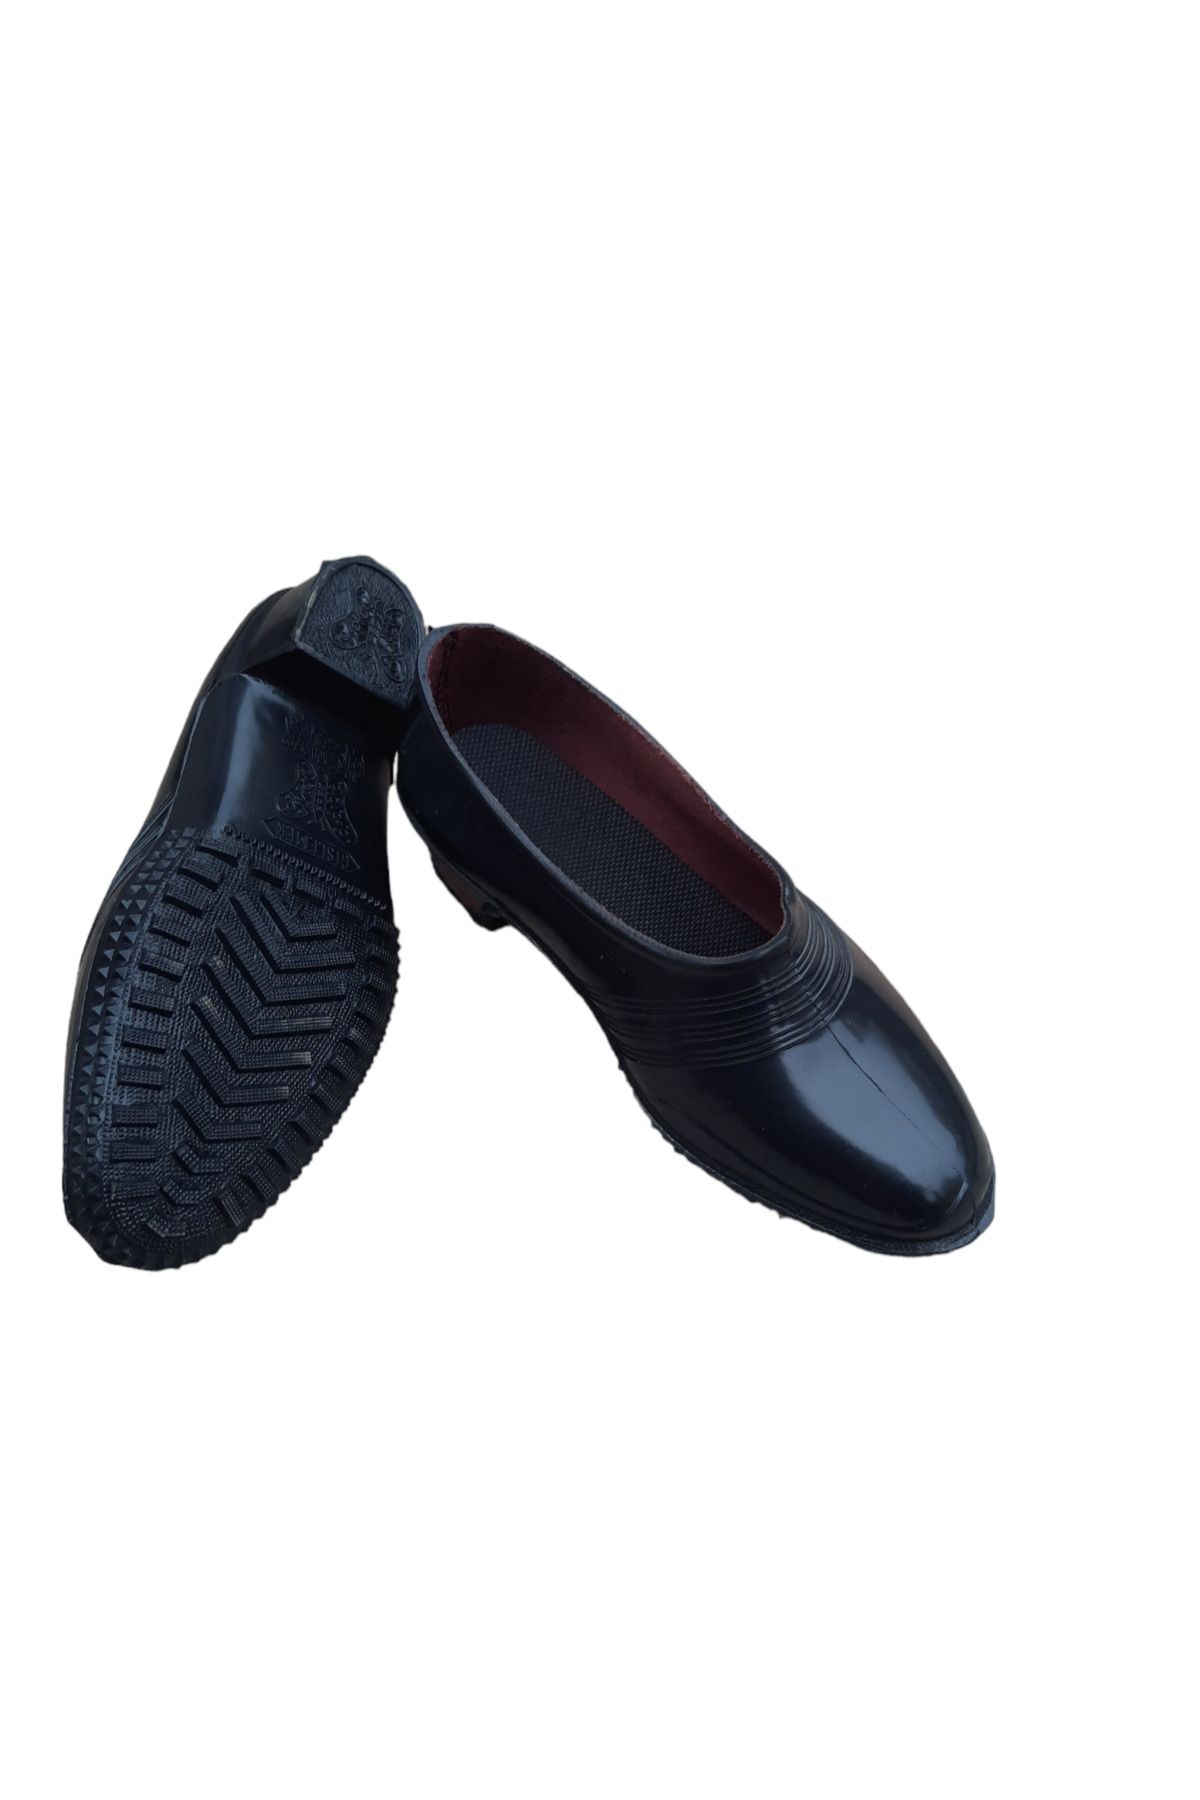 Emek Topuklu astarli kara lastik ayakkabı